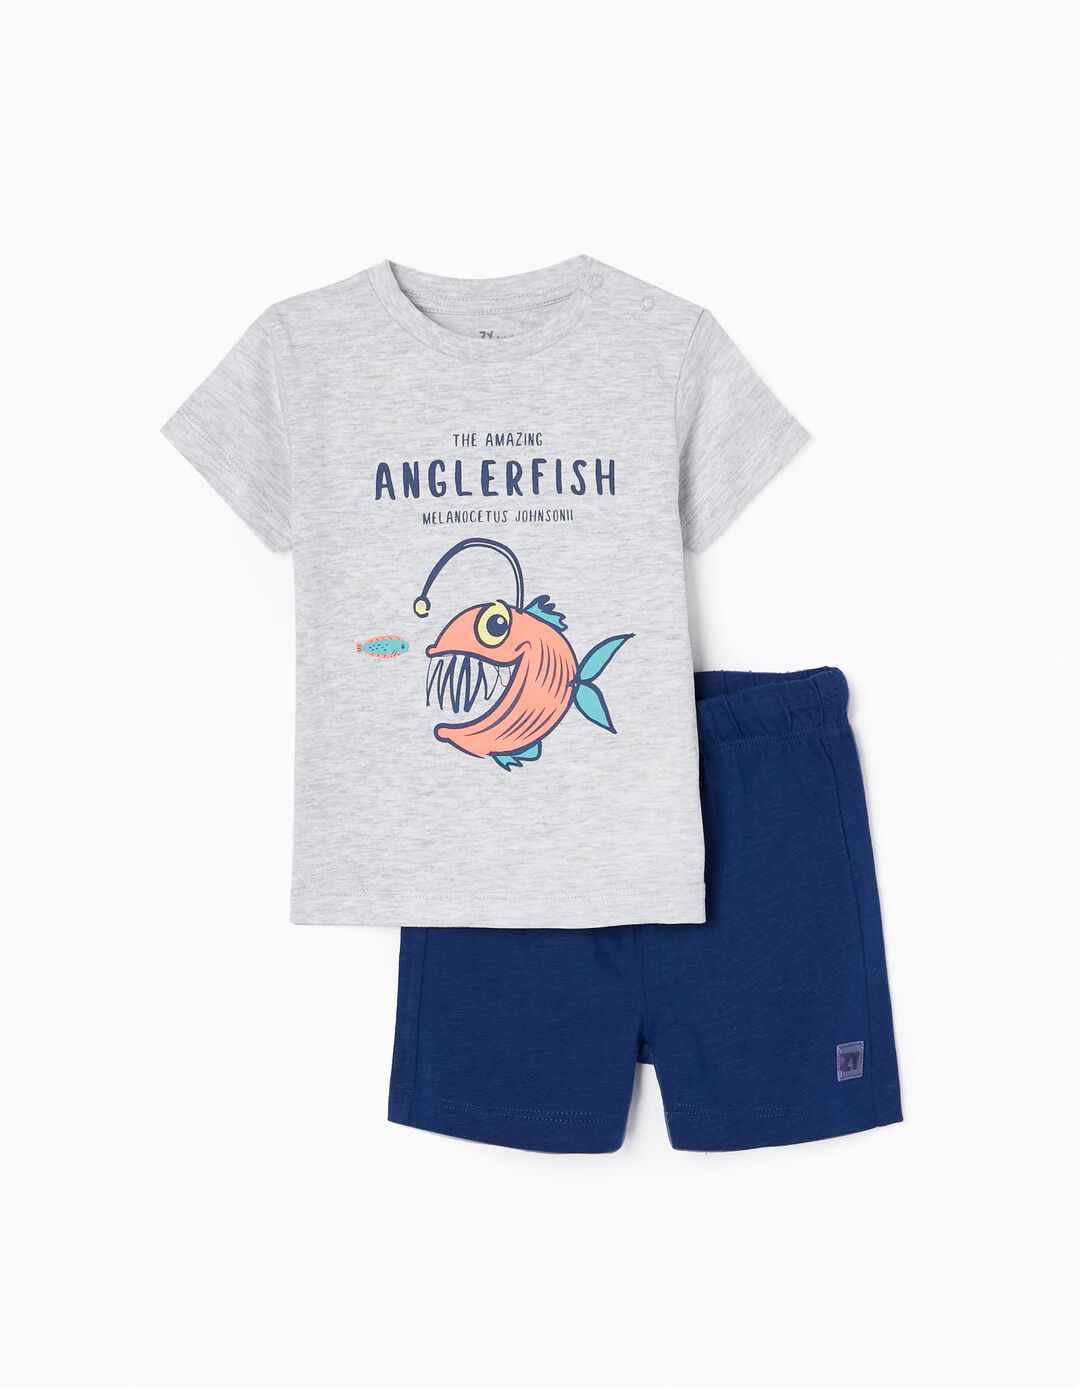 T-shirt + Calções em Algodão para Bebé Menino 'Tamboril', Cinza/Azul Escuro